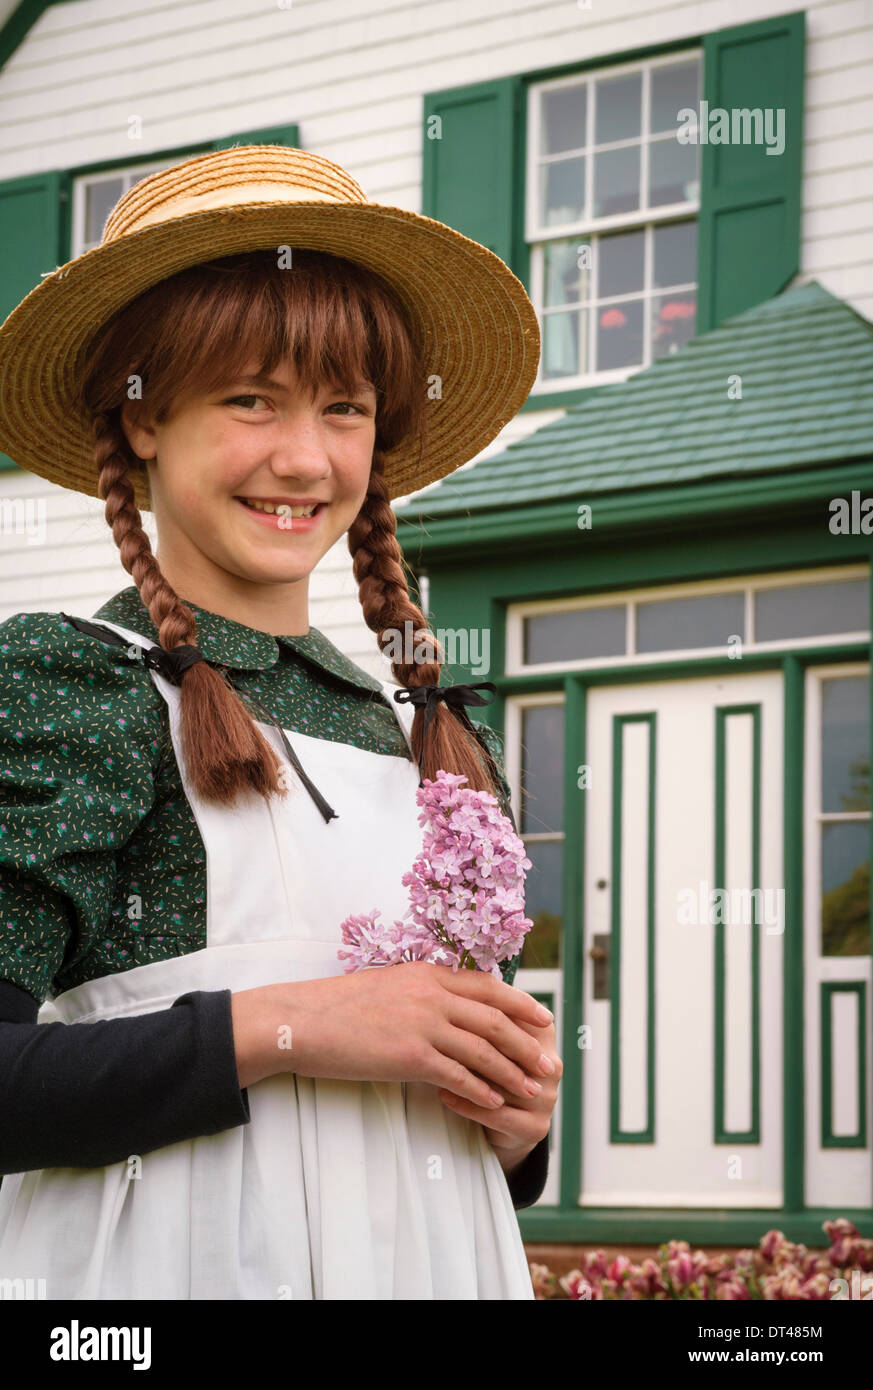 Andrea Hickey se présentant comme Anne of Green Gables à la maison Green Gables ; Prince Edward Island, Canada. Banque D'Images